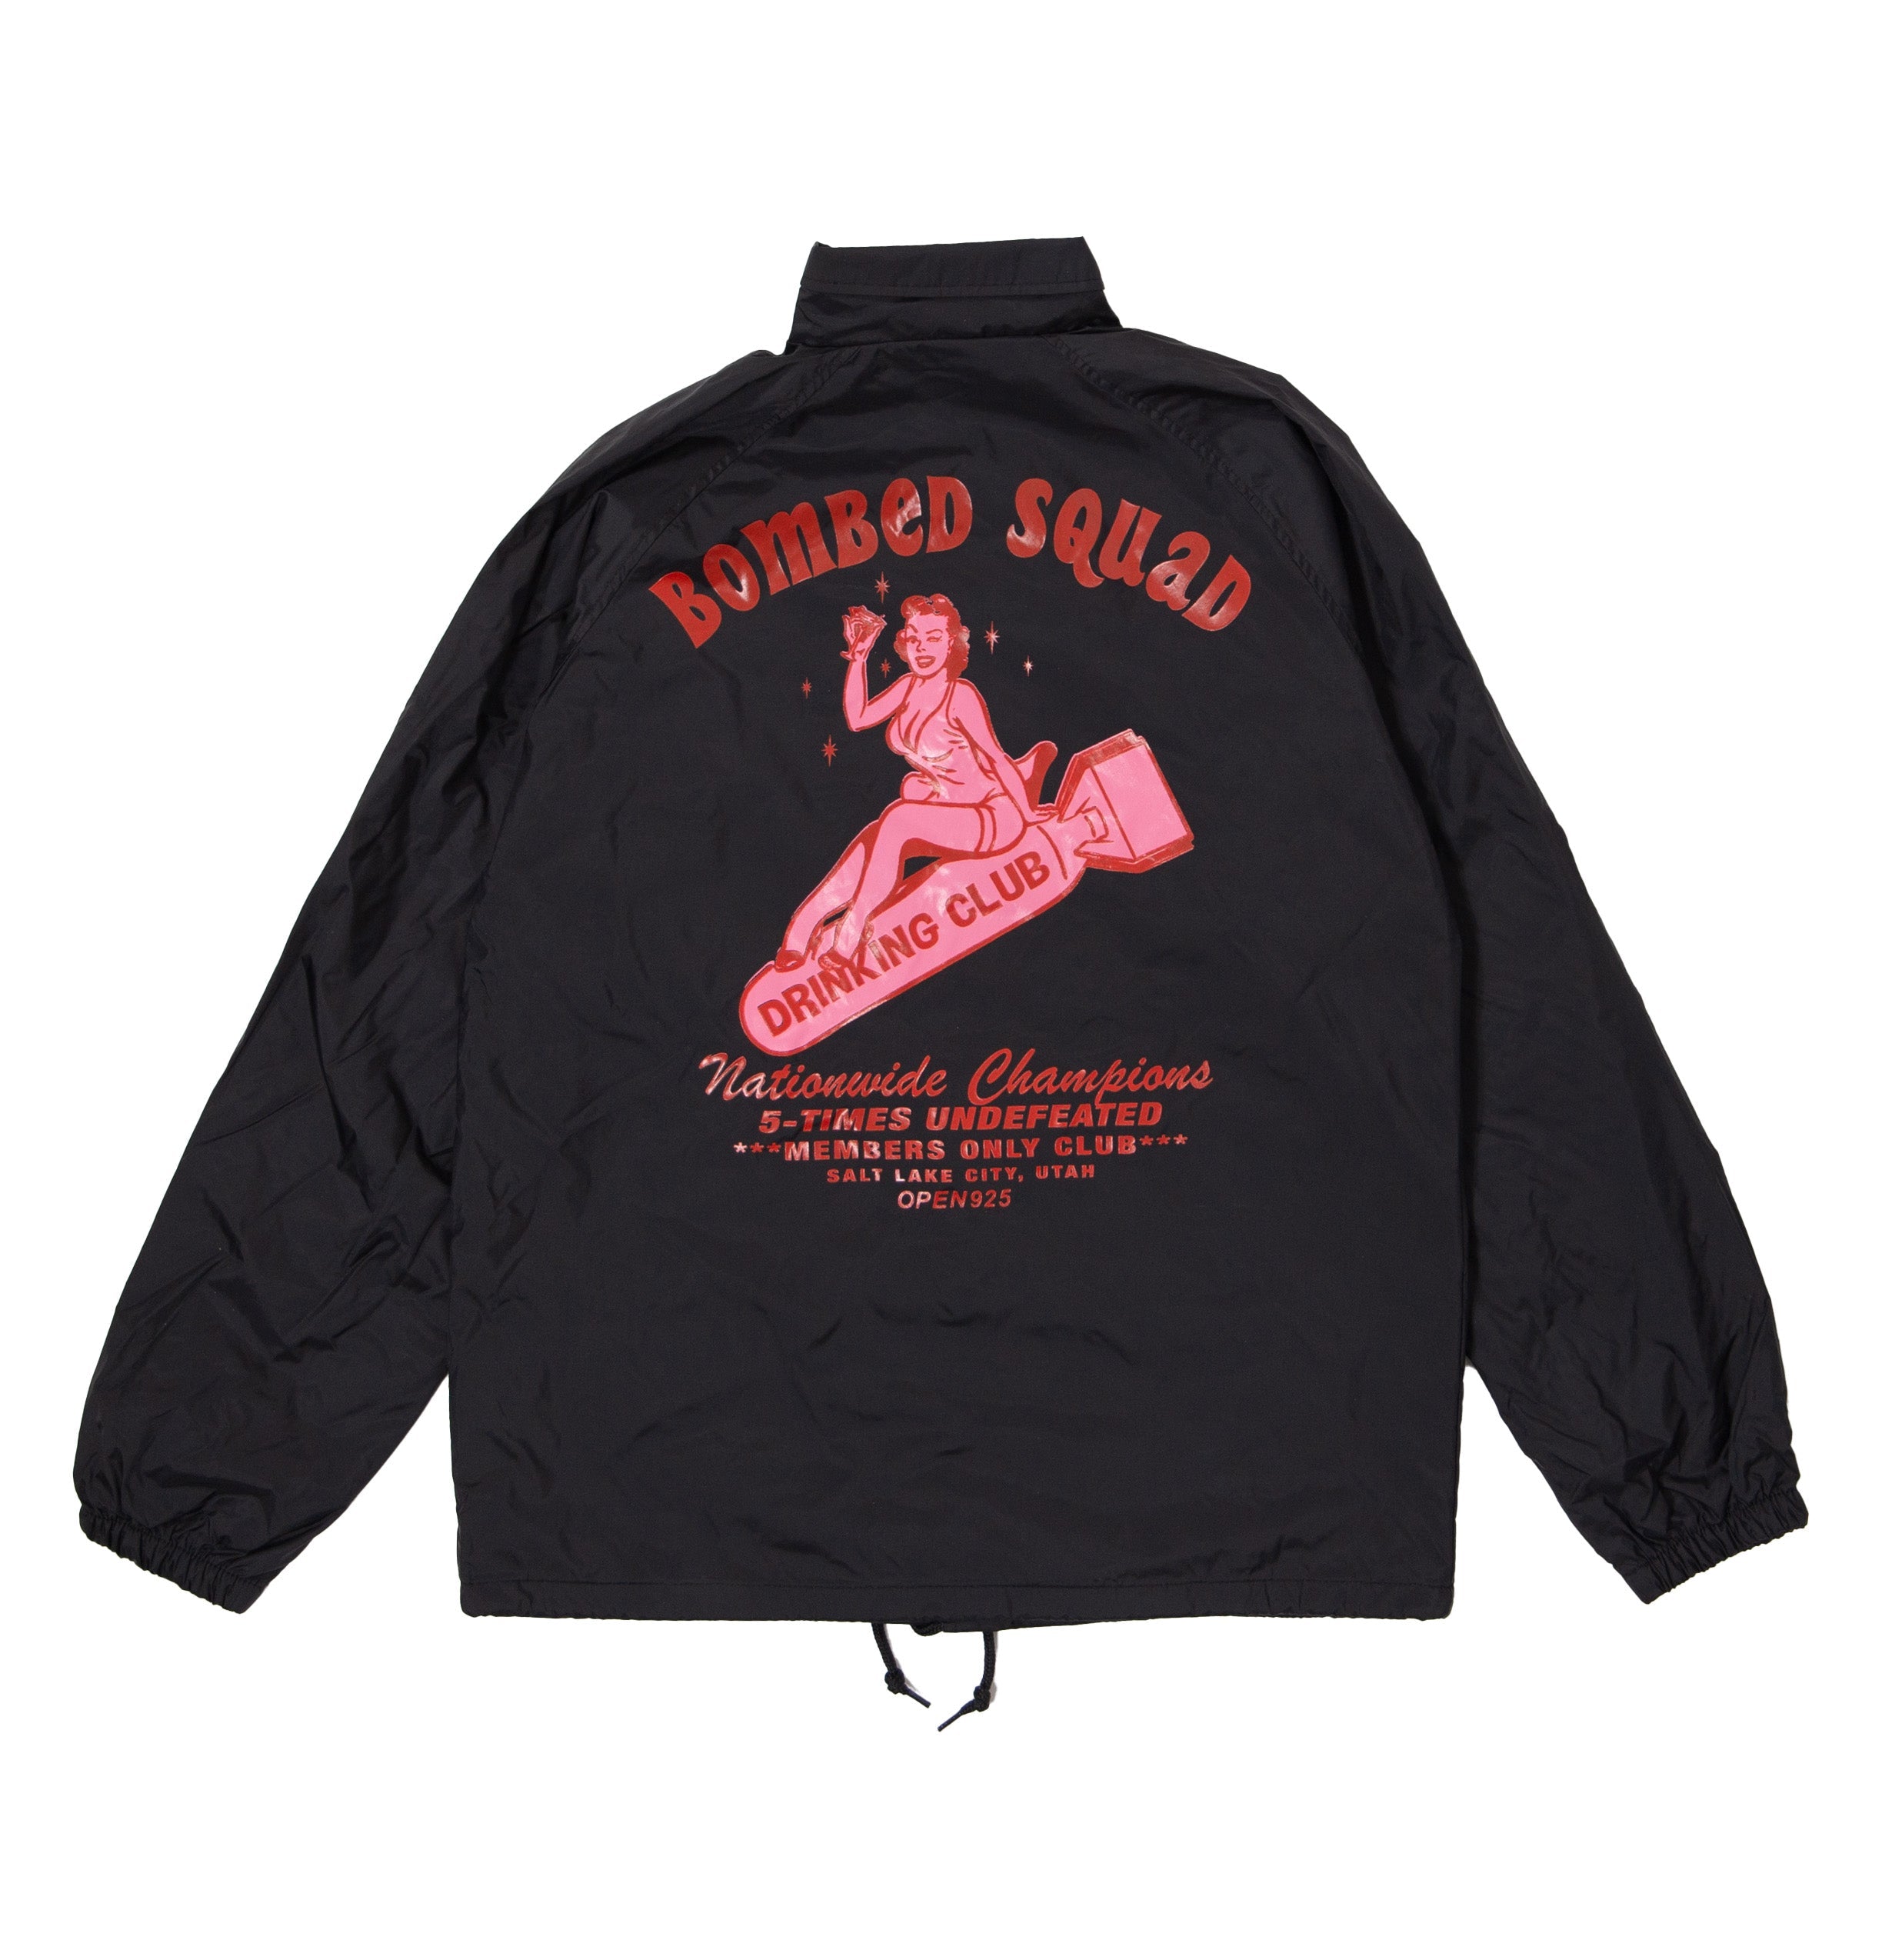 Bombed Squad Skate Jacket Black | Open925